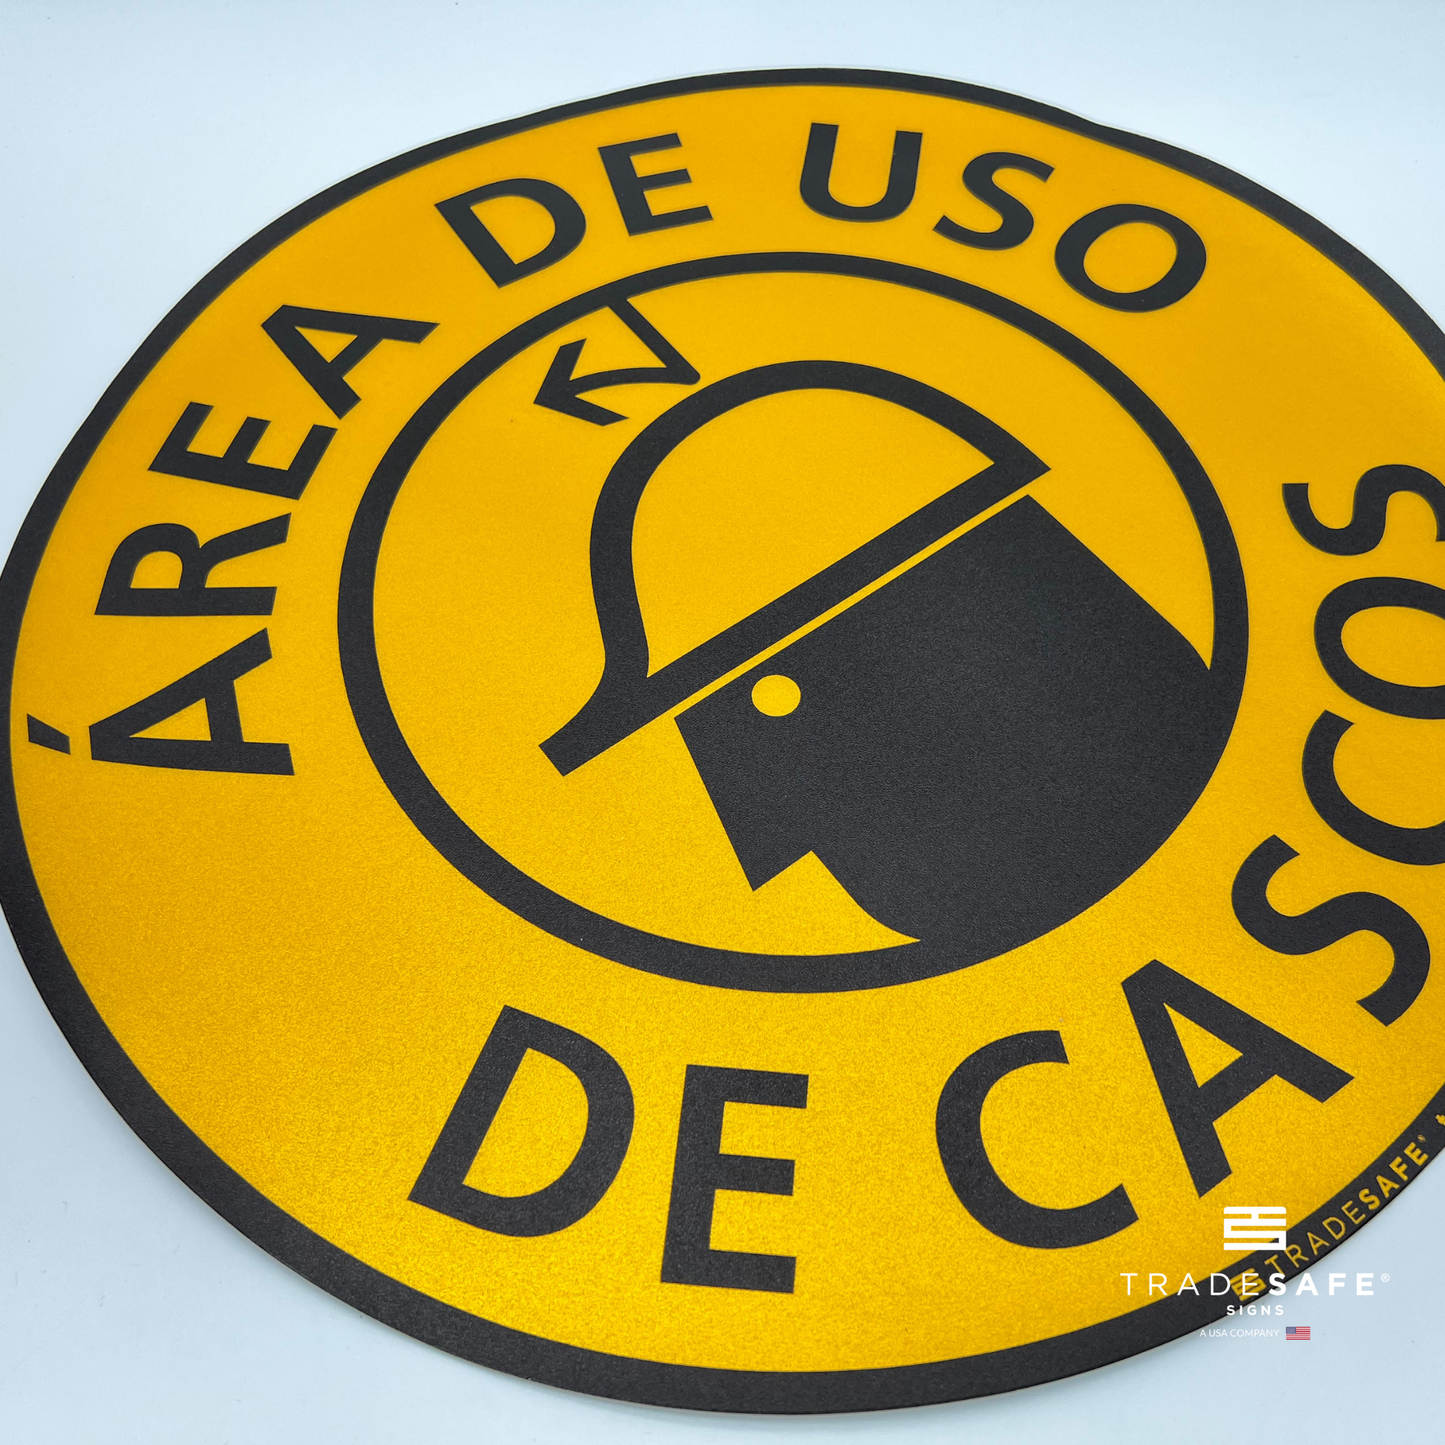 close-up of "área de uso de cascos" sign